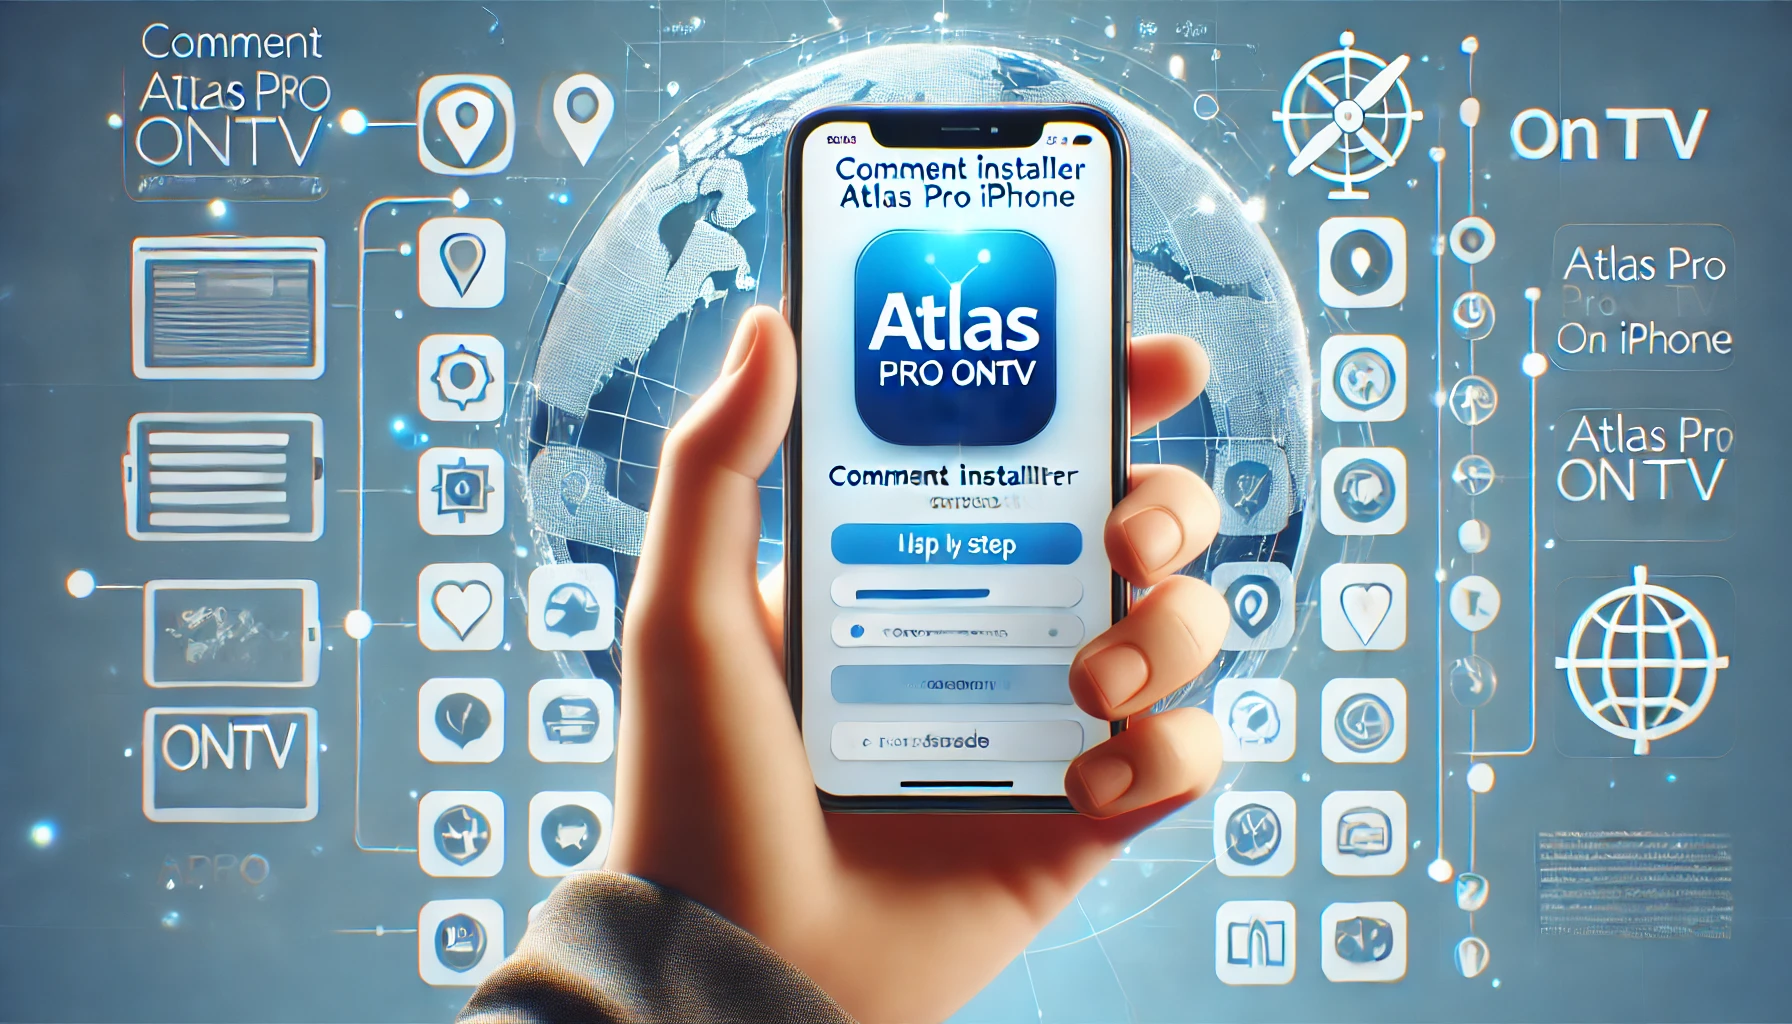 comment installer atlas pro ontv sur iphone